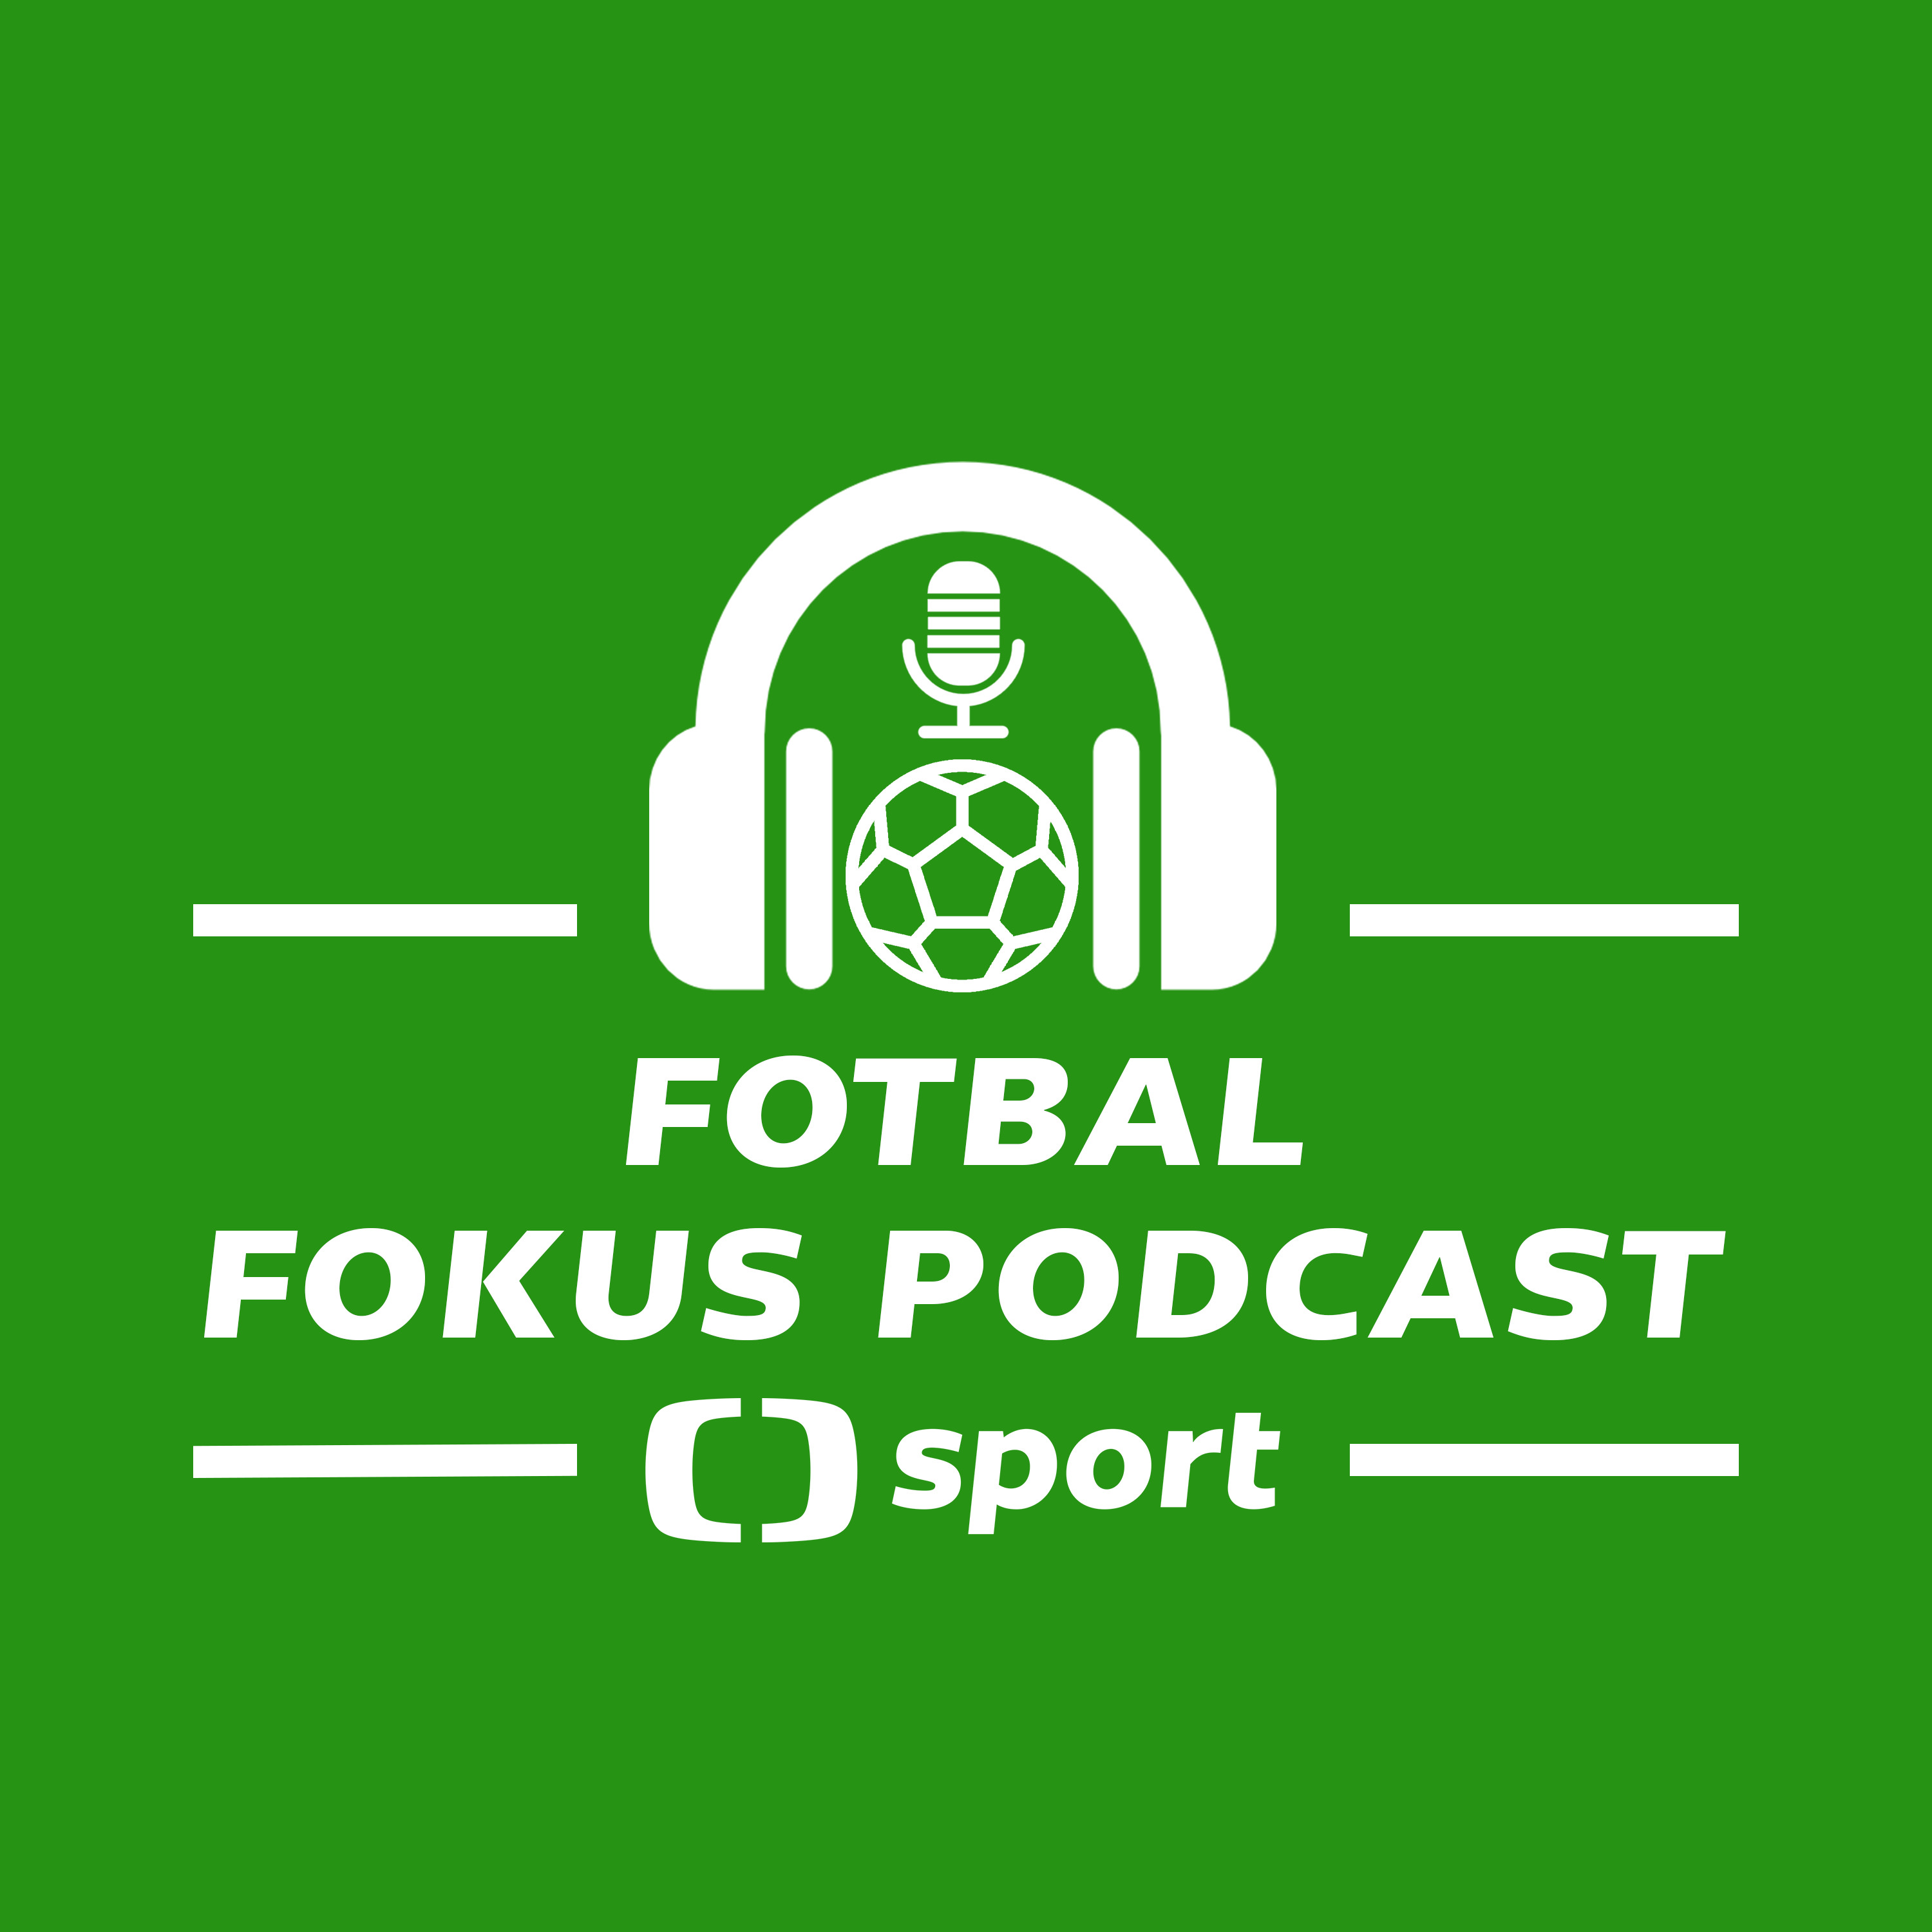 Fotbal fokus podcast: Nová jednička Sparty, navrátilec Valenta a přestavba Jablonce